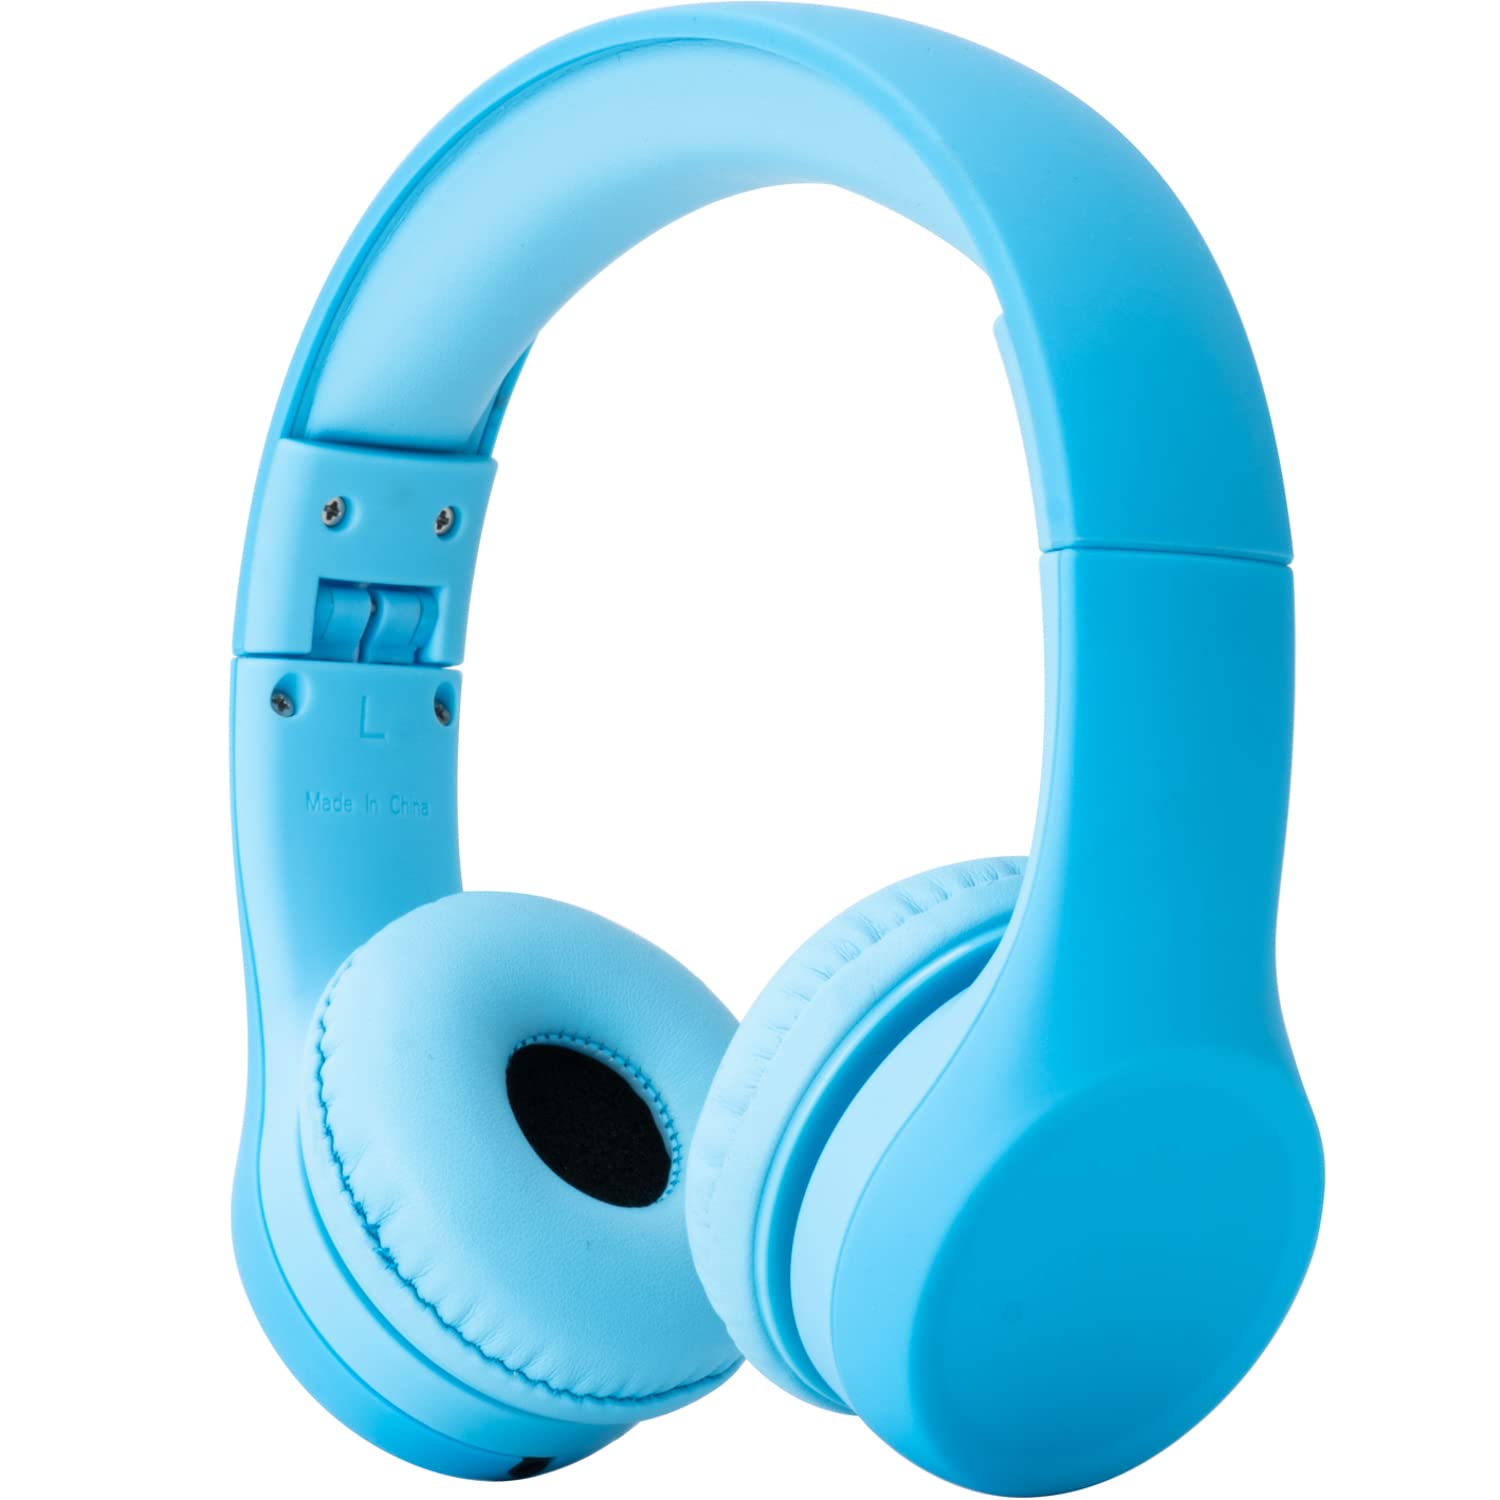 Snug Słuchawki Play+ Kids z ograniczeniem głośności dla małych dzieci (chłopcy/dziewczęta) – niebieskie